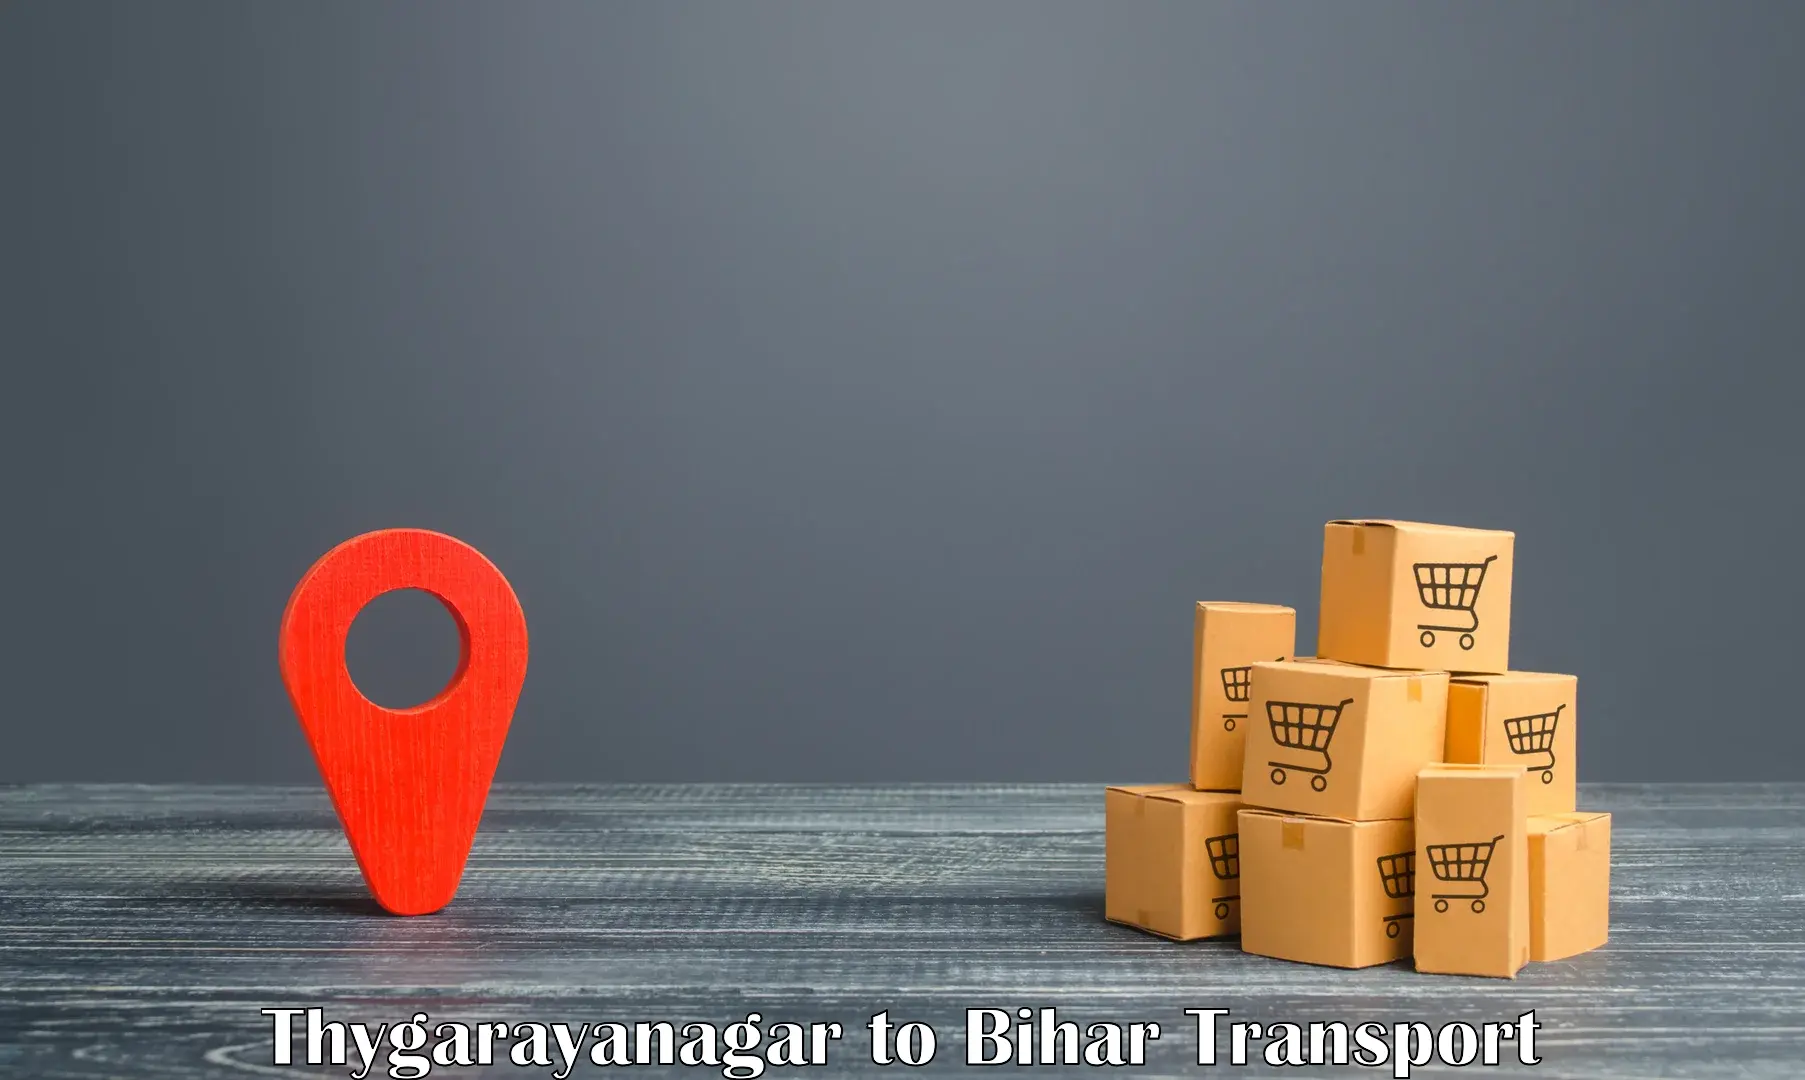 Container transport service Thygarayanagar to Deo Aurangabad